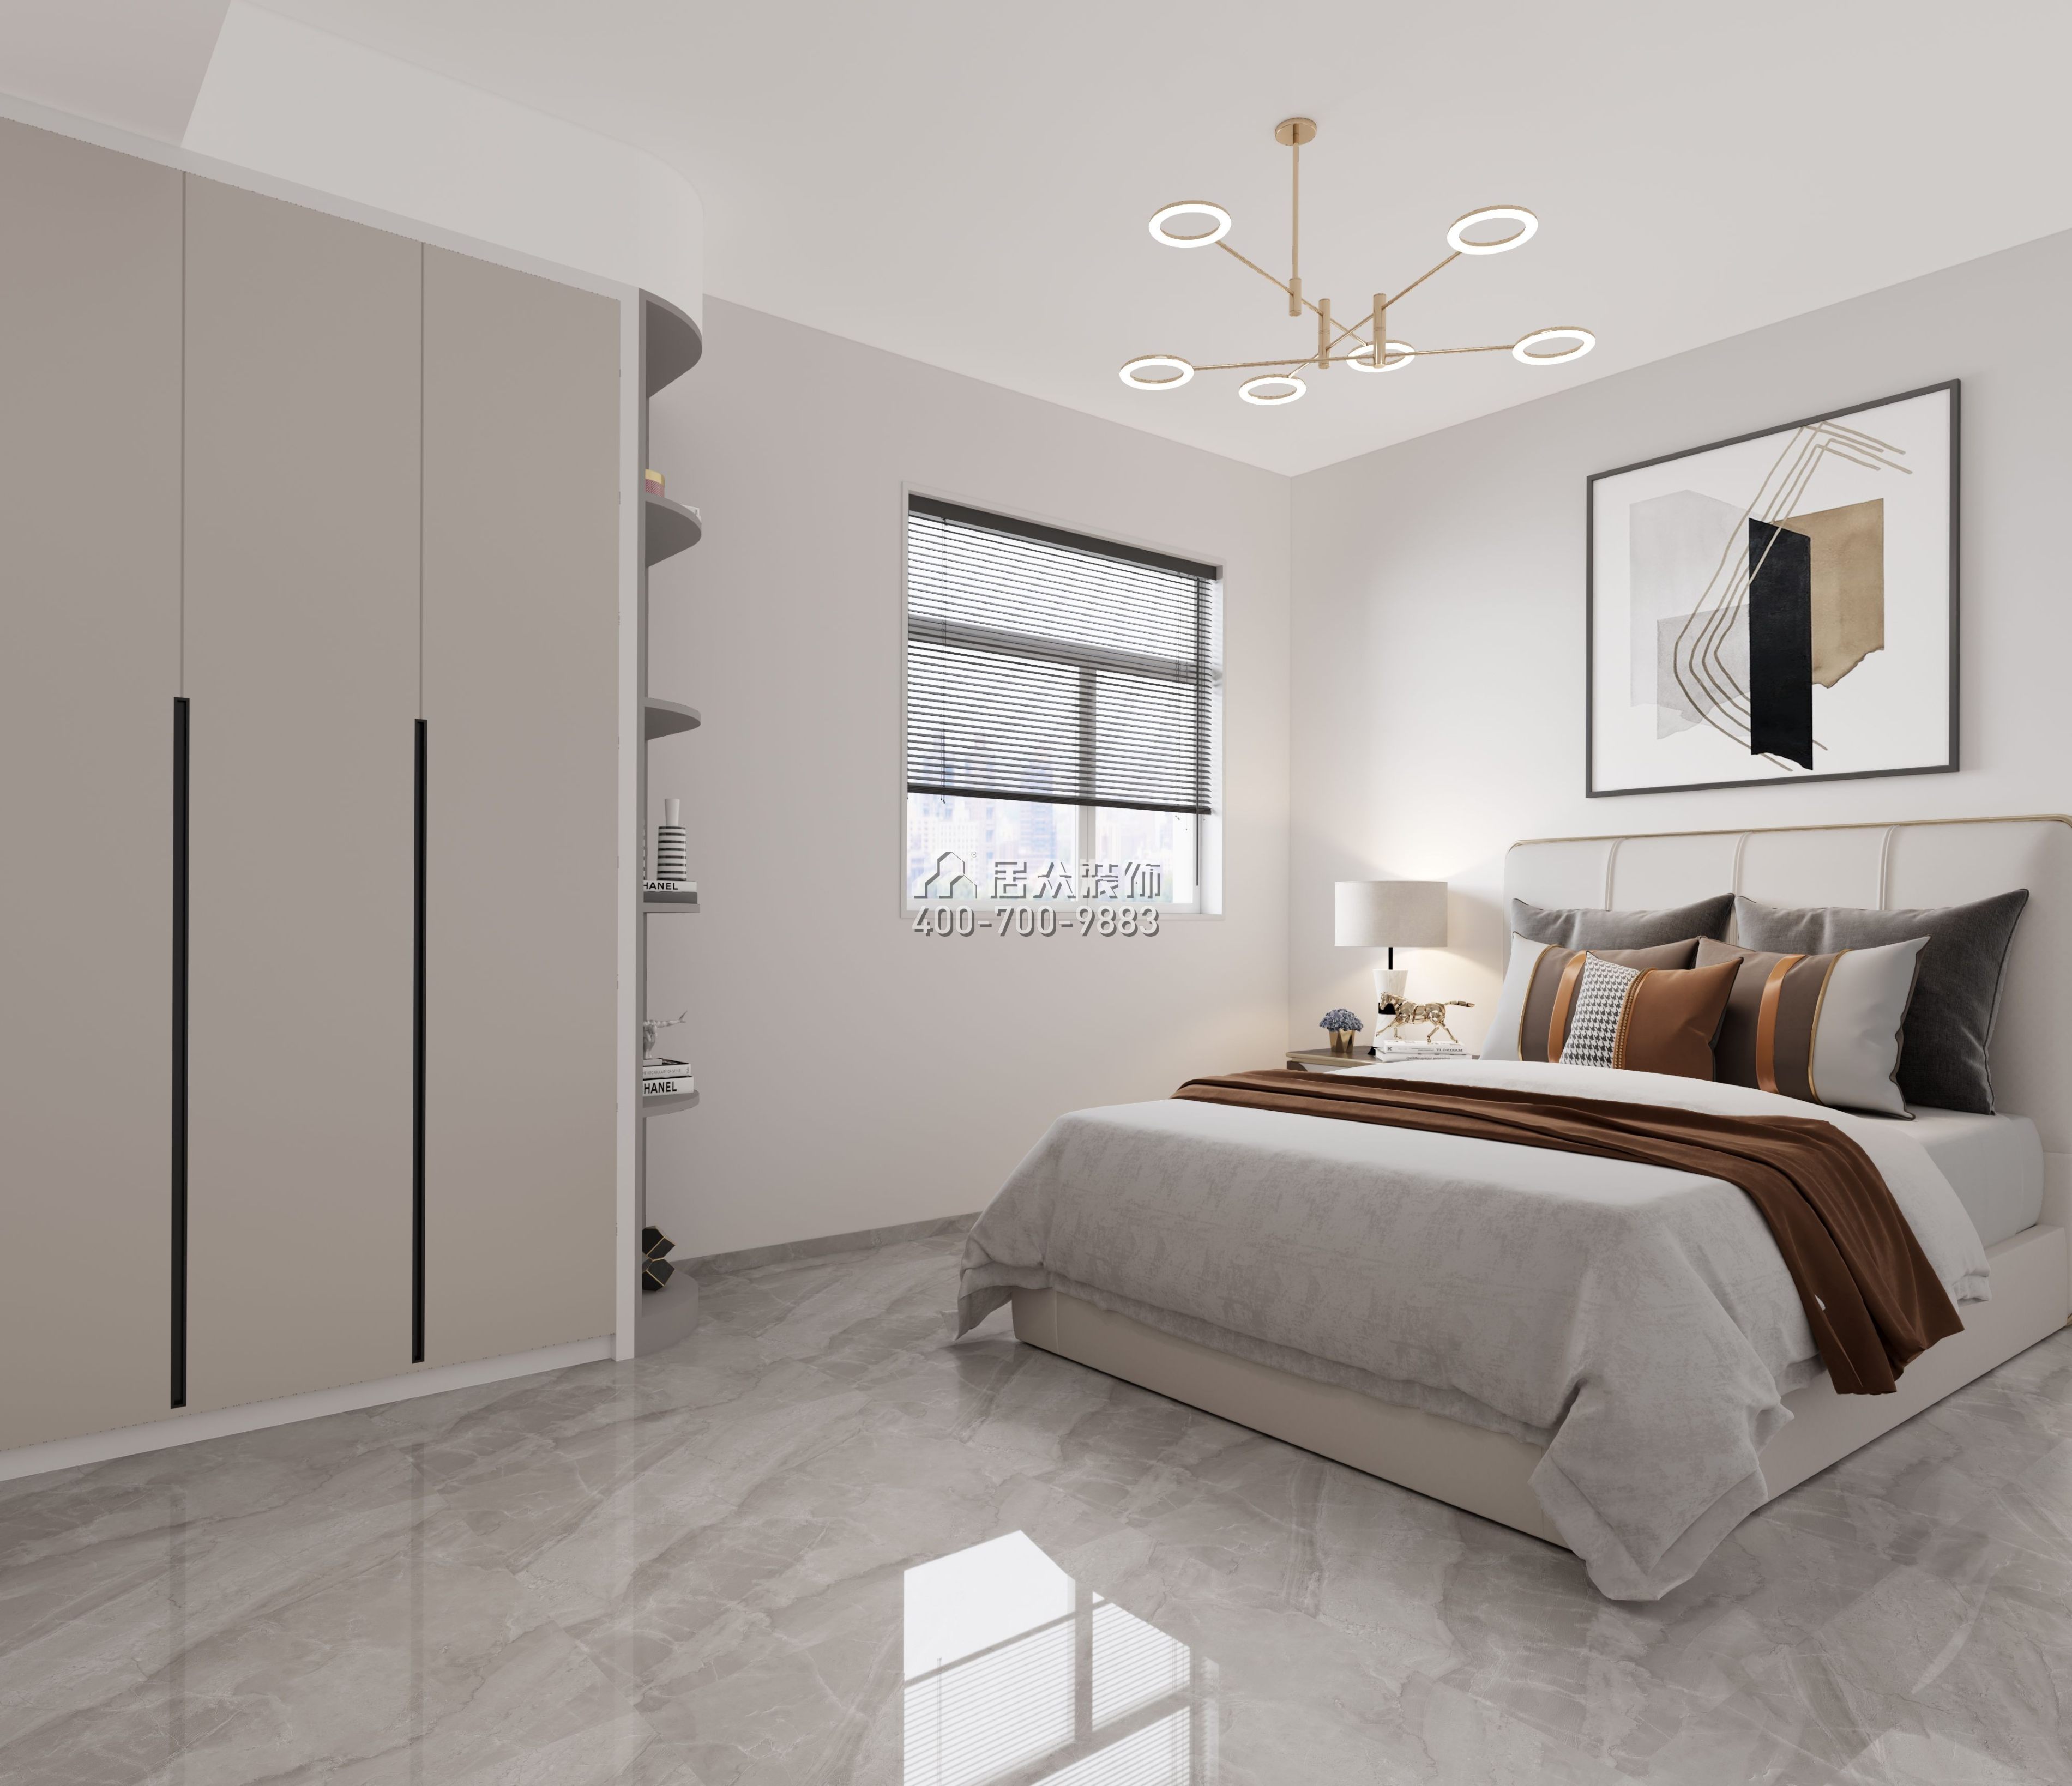 海濱廣場100平方米現代簡約風格平層戶型臥室裝修效果圖